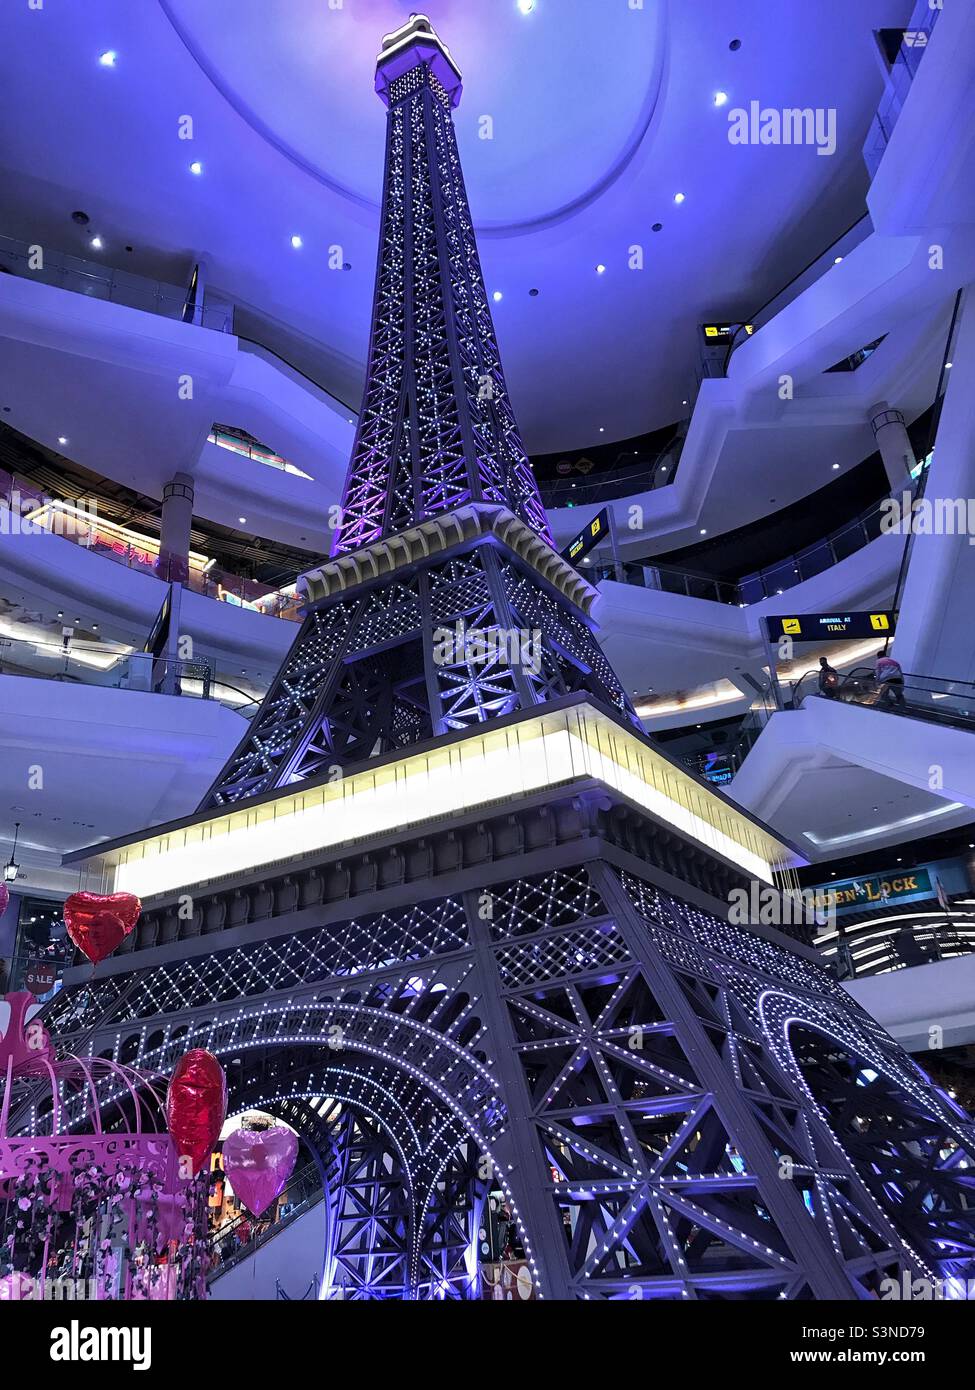 Replica dell'iconica Torre Eiffel al Terminal 21 Shopping Mall a Pattaya Thailandia Sud-Est asiatico. Il centro commerciale e' un centro a tema cittadino su diversi piani, con questo e' il piano di Parigi. Foto Stock